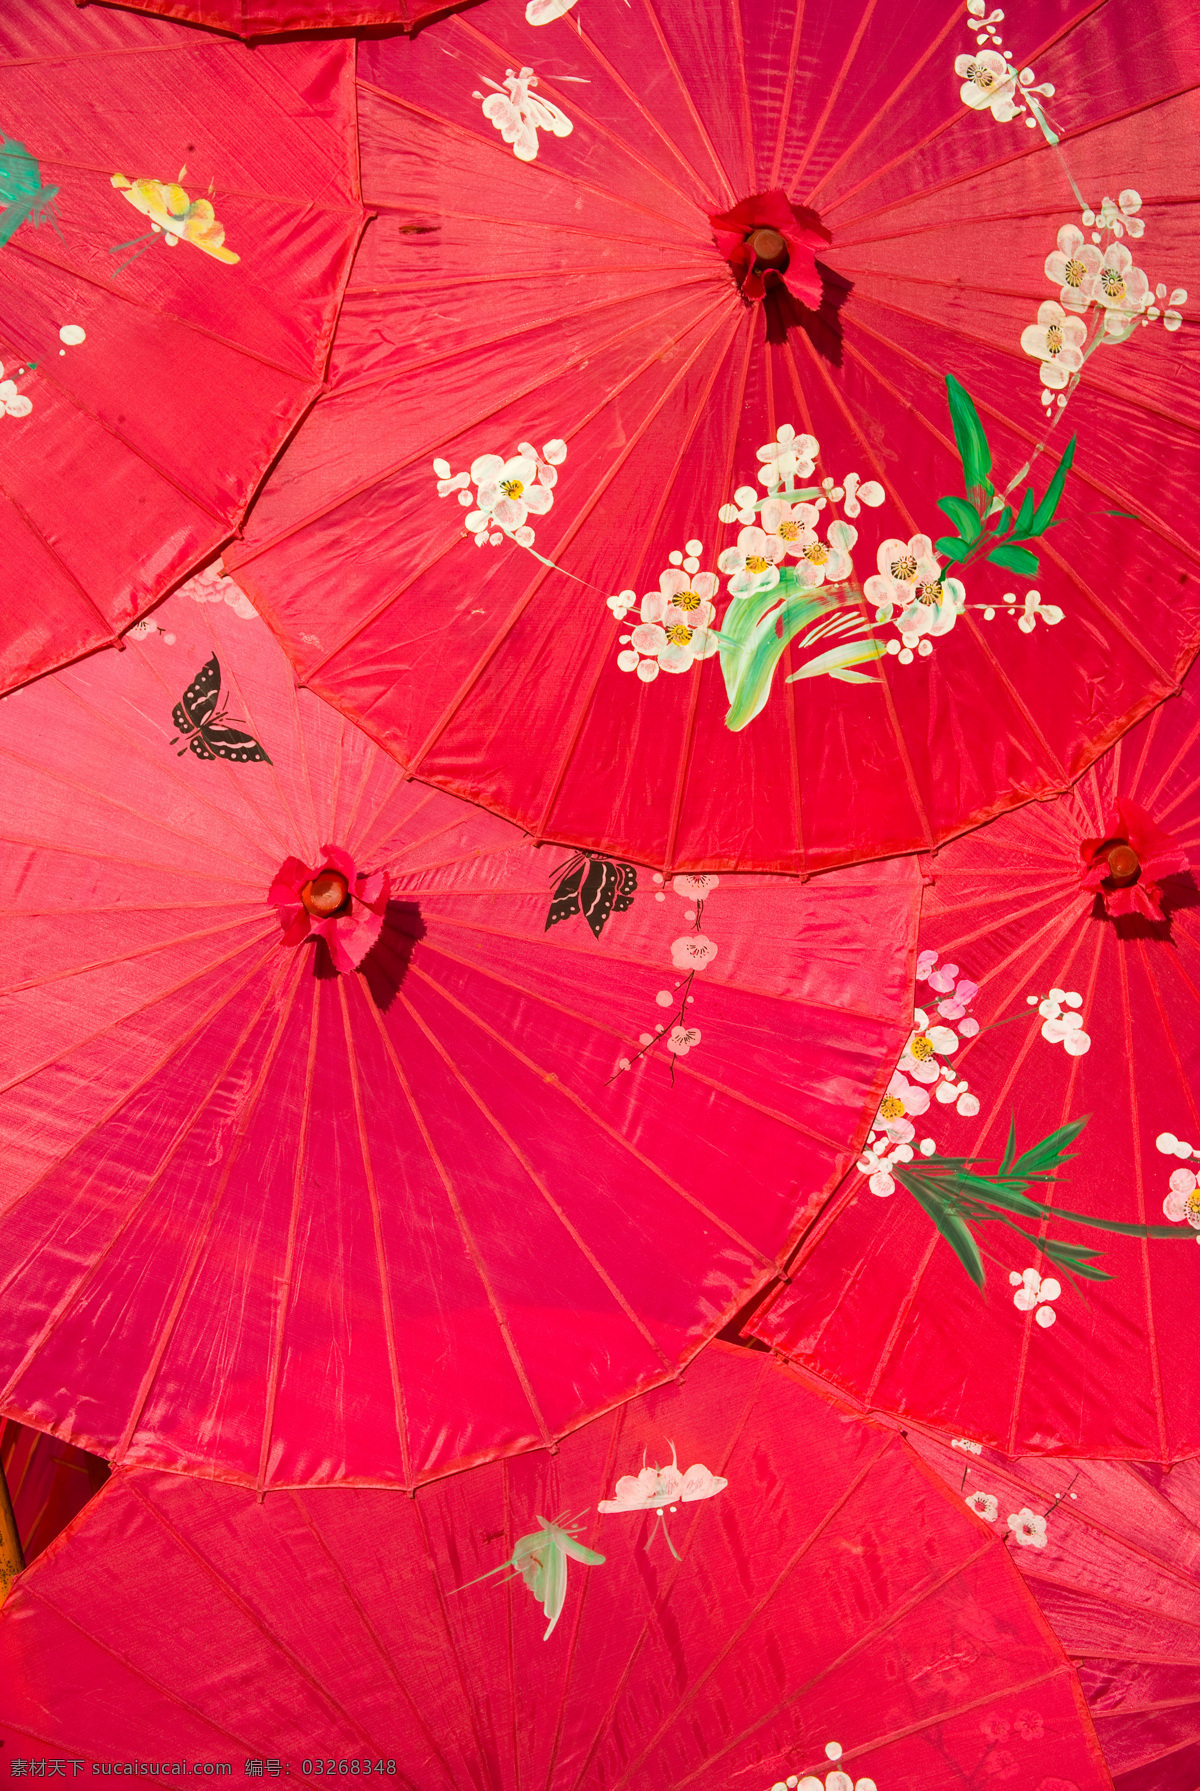 纸伞 油纸伞 传统文化 传统民俗 绿色油纸伞 文化艺术